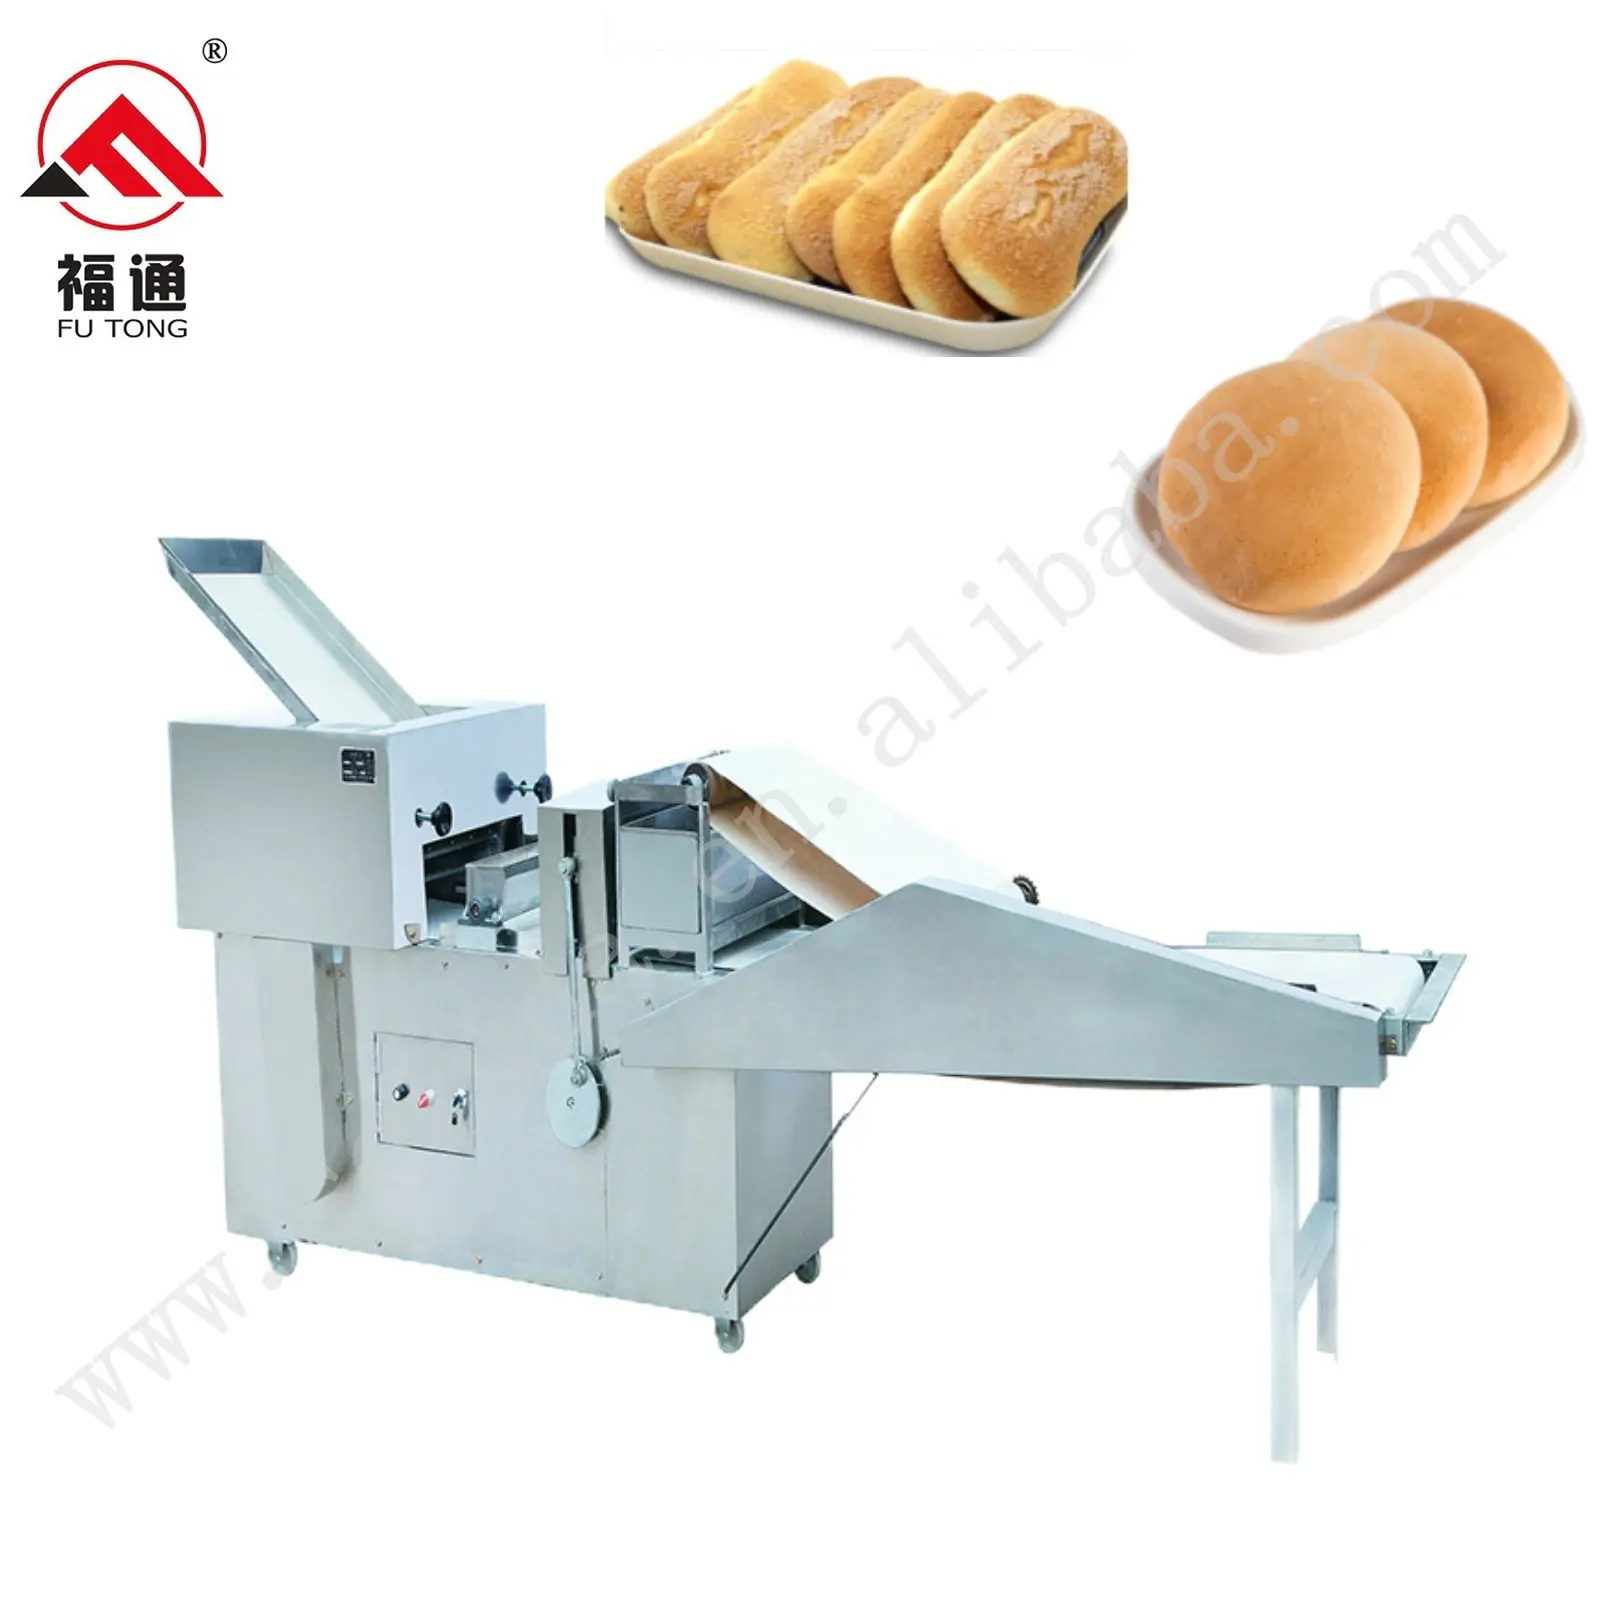 FUTONG Tortilla macchina per il pane linea di produzione di pane Pita/macchina per fare il pane pita